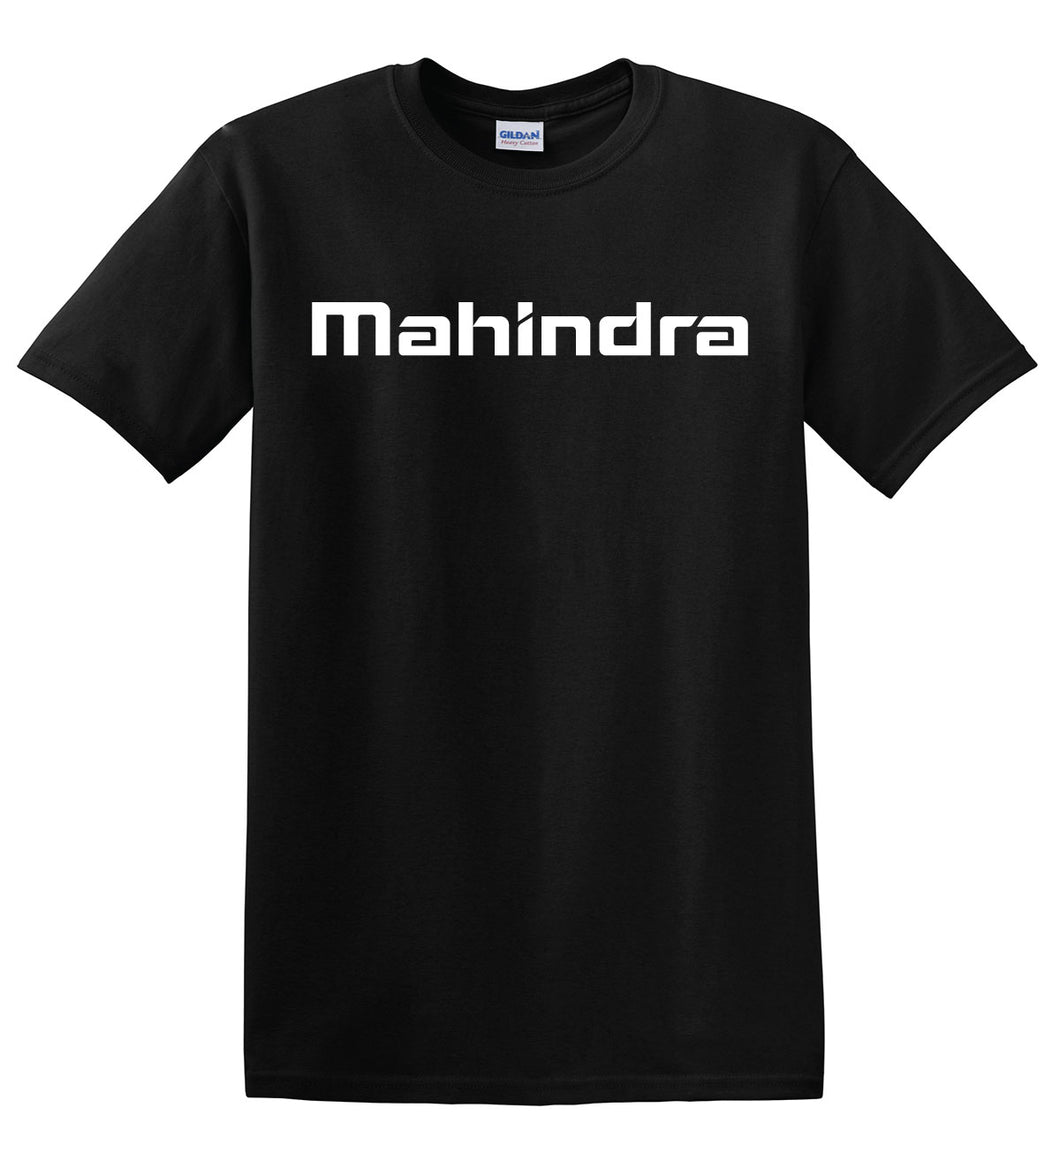 MAHINDRA T-SHIRT - TSHIRT1-BLK